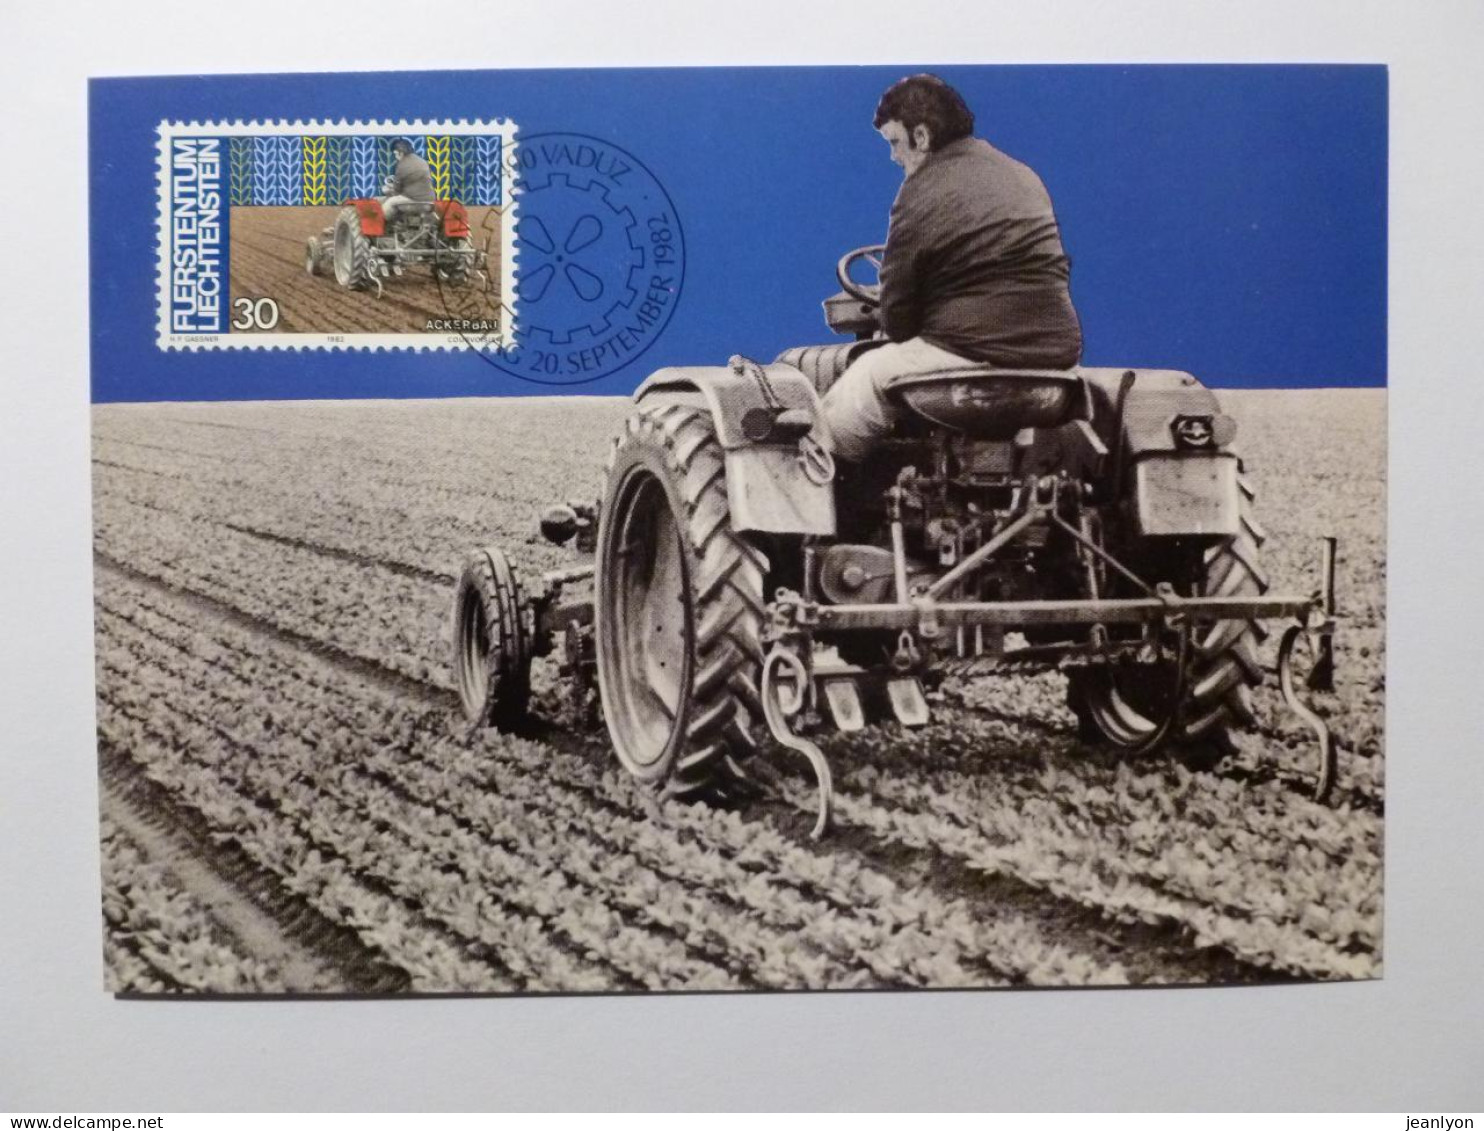 AGRICULTURE / PAYSAN - TRACTEUR - Agriculteur Sur Le Tracteur Dans Un Champ - Carte Philatélique Liechtenstein - Trattori